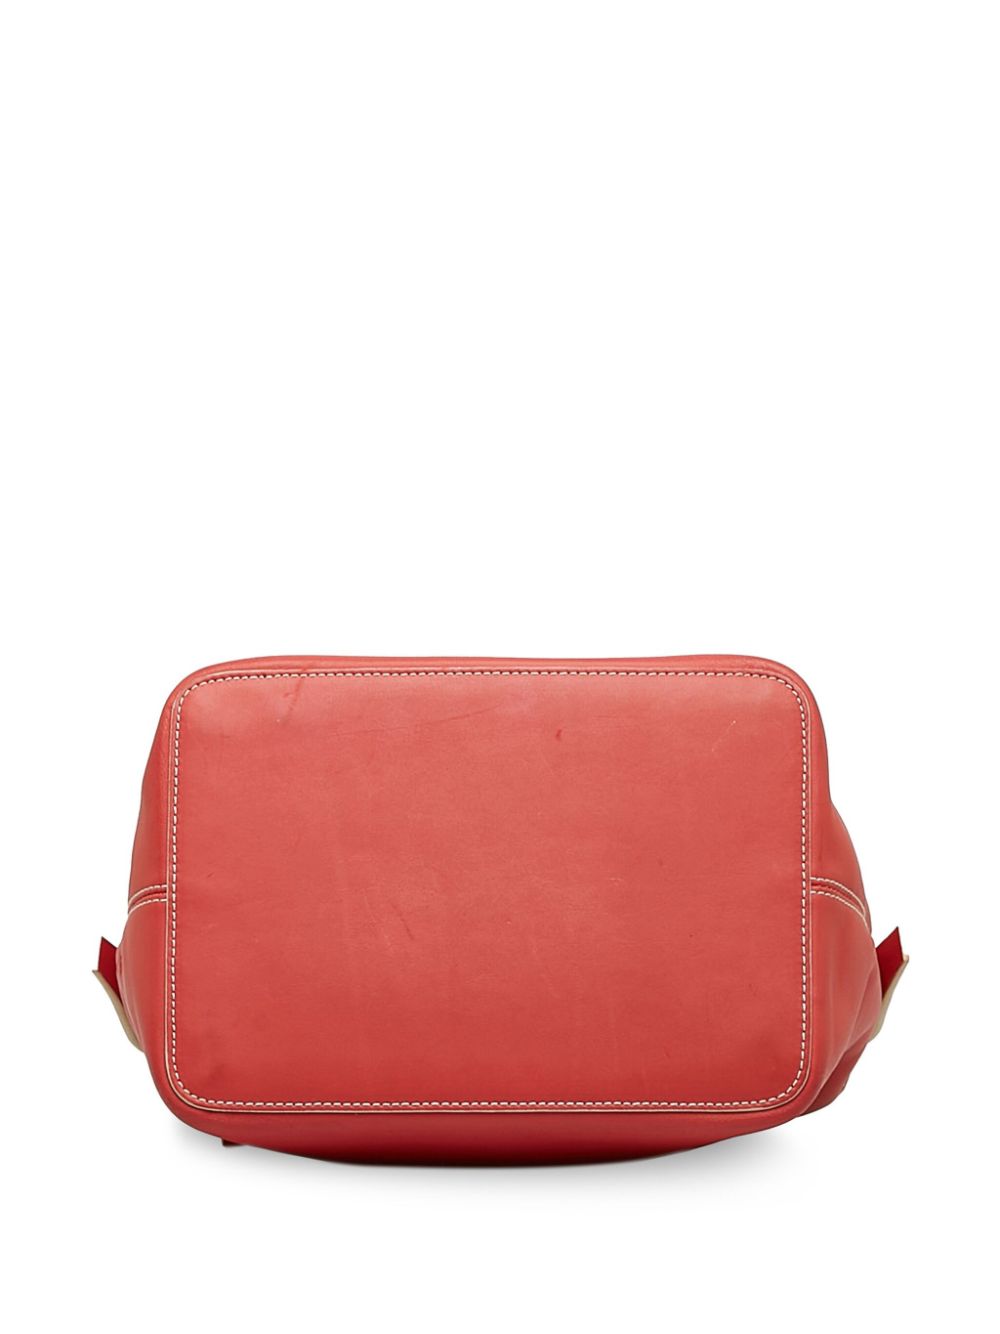 Pre-owned Loewe Contrasting Leather Handbag In Red